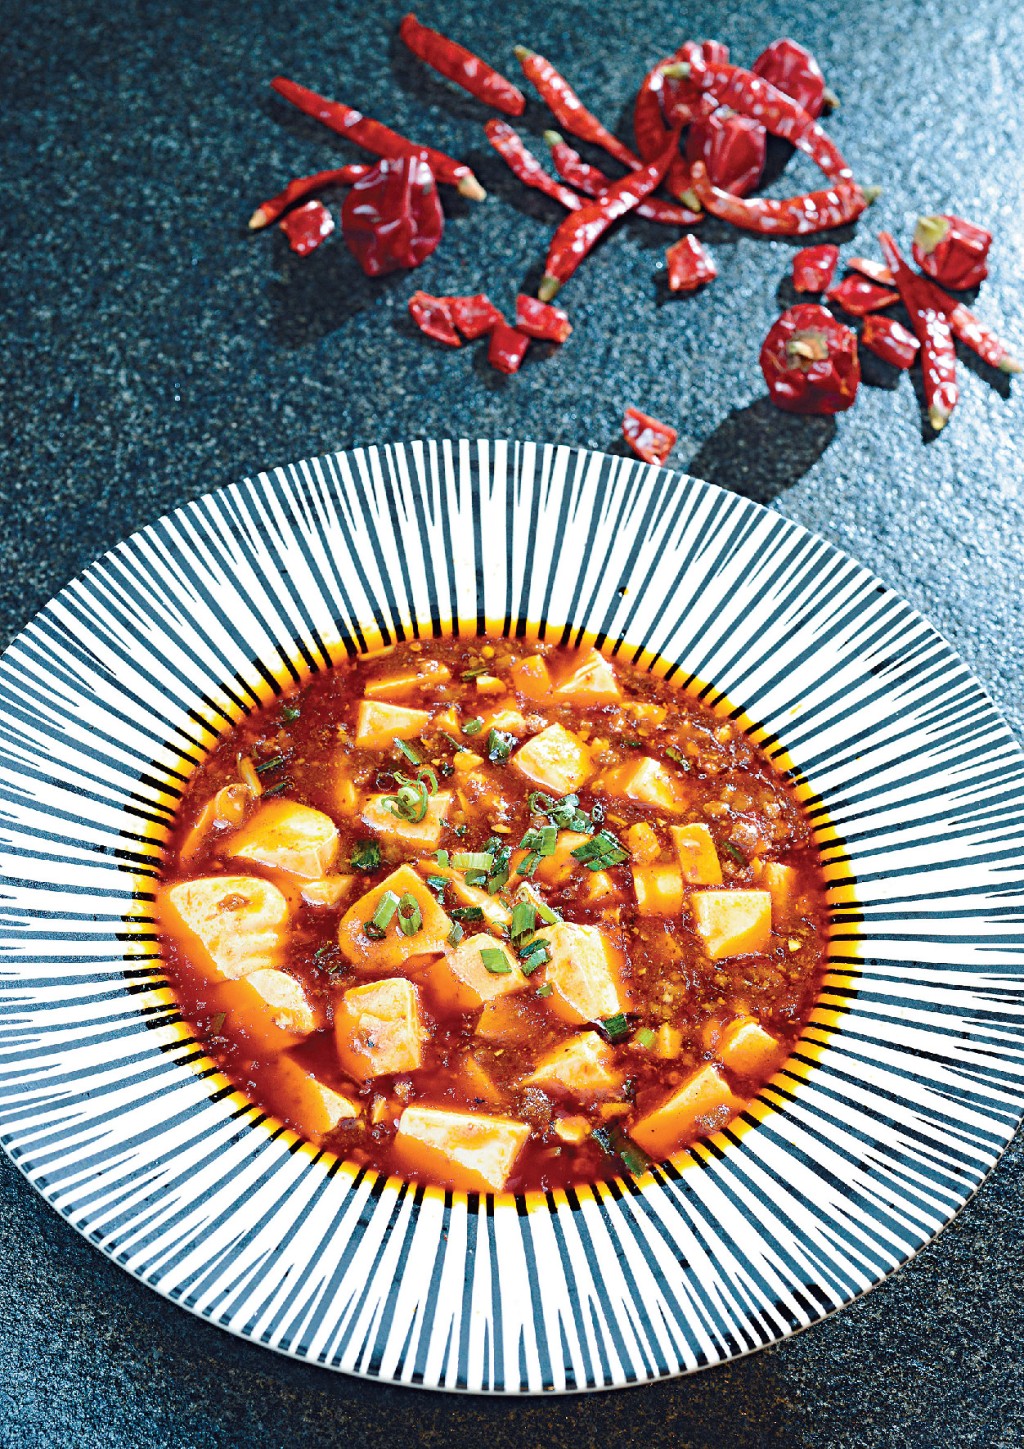 麻婆豆腐中的重要材料辣椒，於明朝傳入中國。